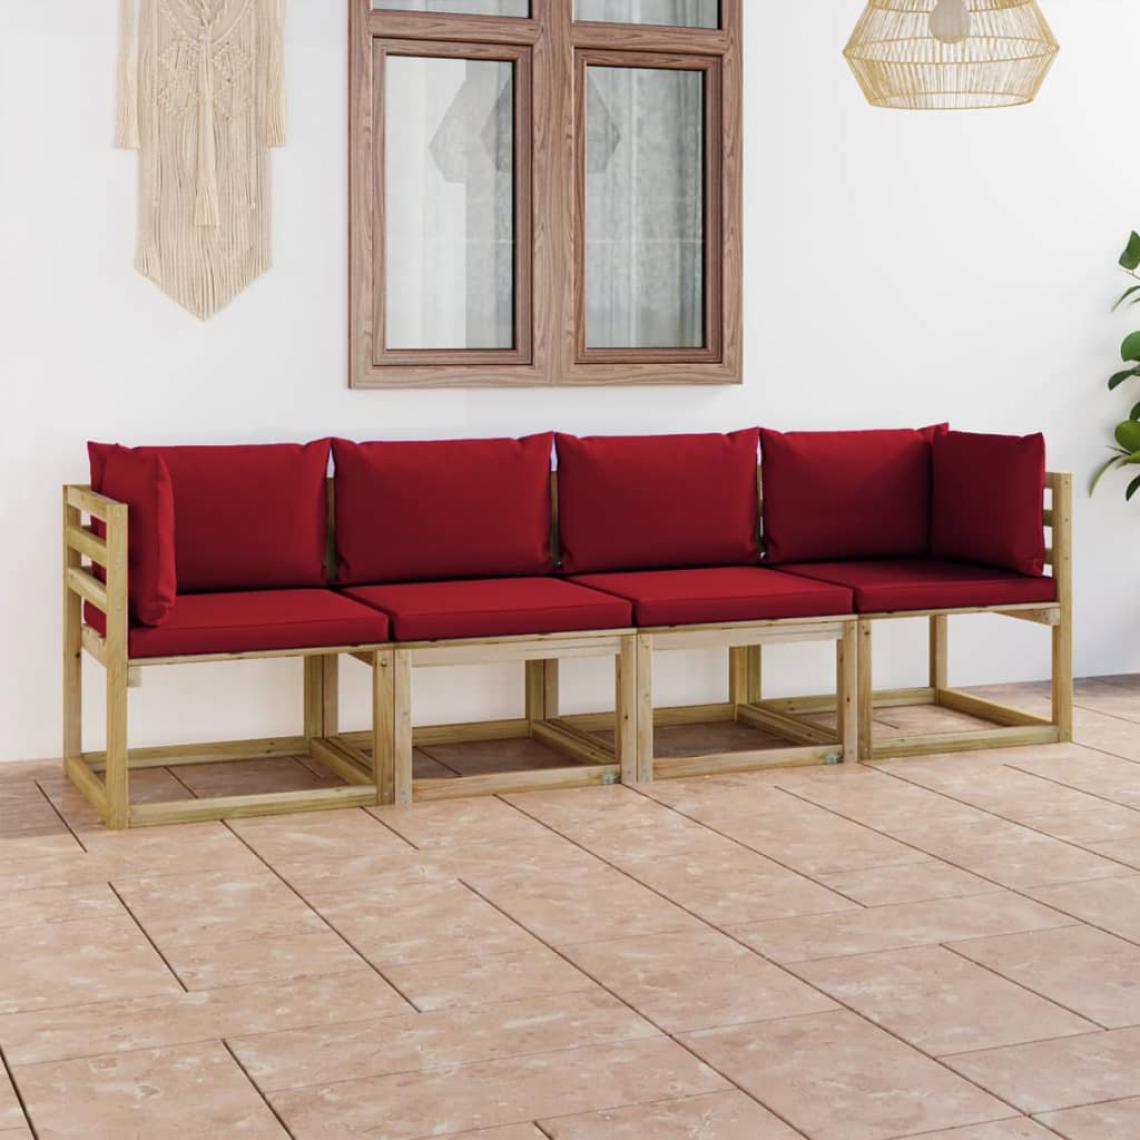 Chunhelife - Canapé de jardin 4 places avec coussins rouge bordeaux - Ensembles canapés et fauteuils